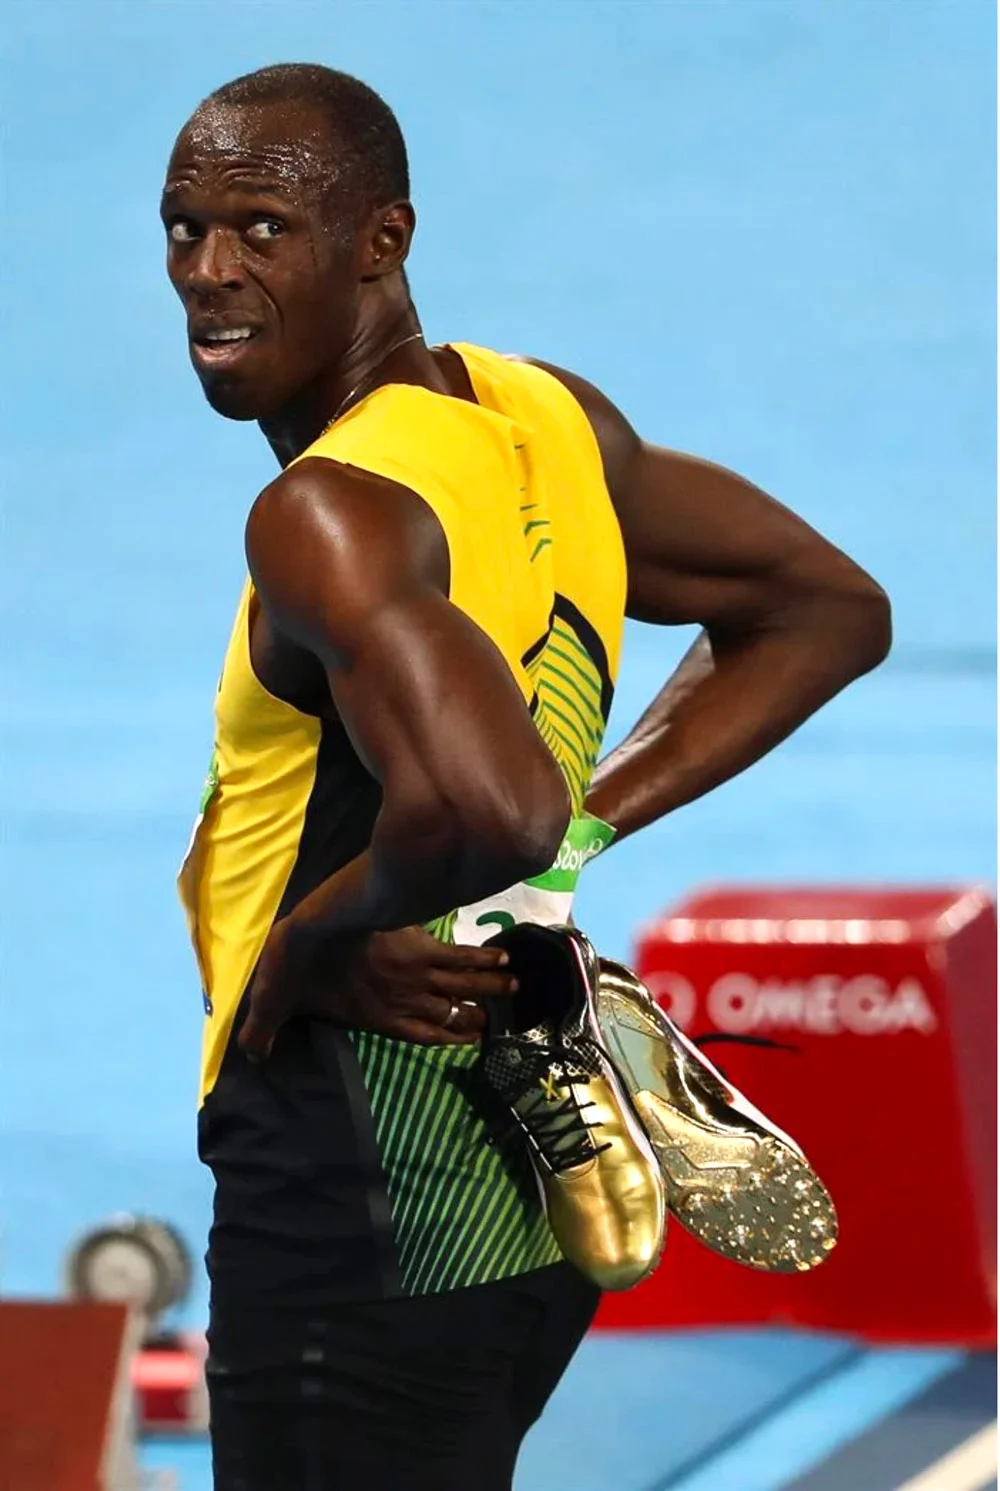 Usain Bolt com suas sapatilhas douradas (Imagem: divulgação)